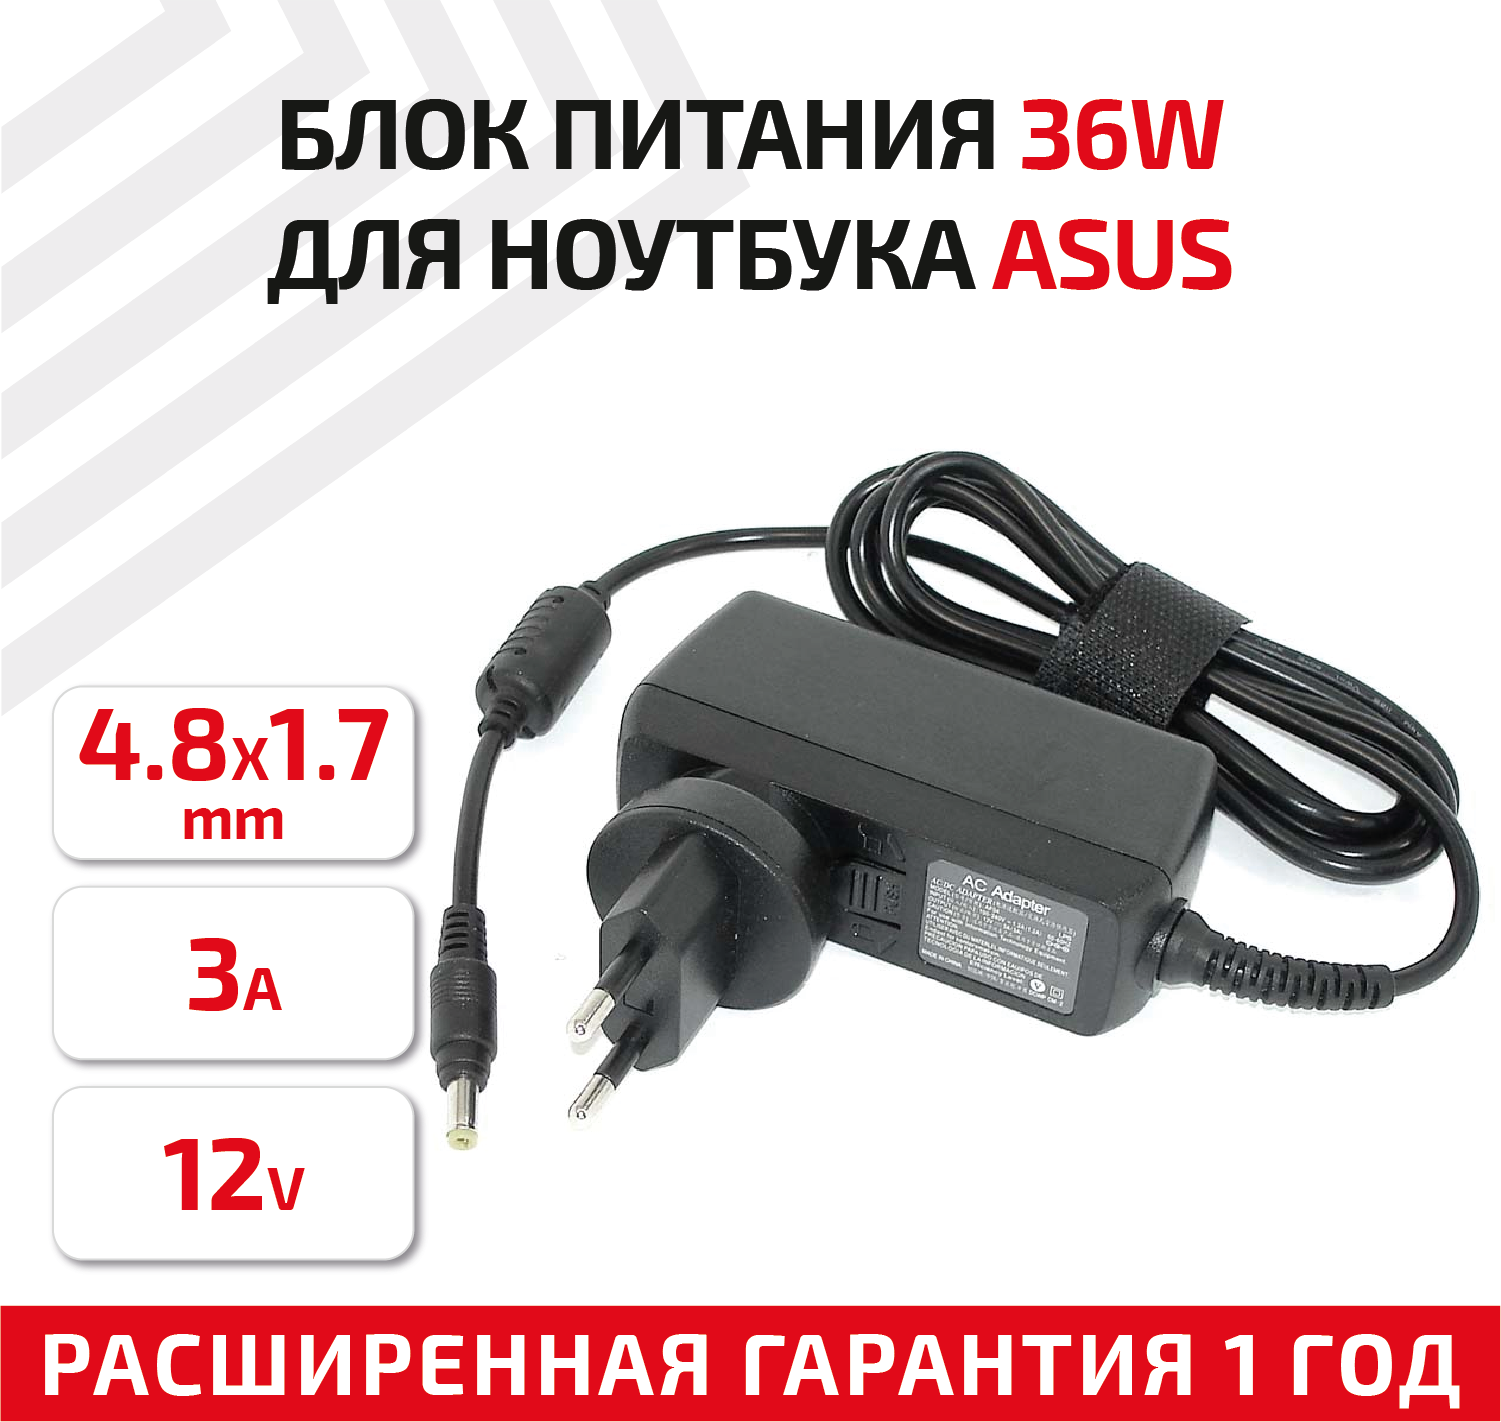 Зарядное устройство (блок питания/зарядка) для ноутбука Asus 12В, 3А, 36Вт, 4.8x1.7мм, Travel Charger